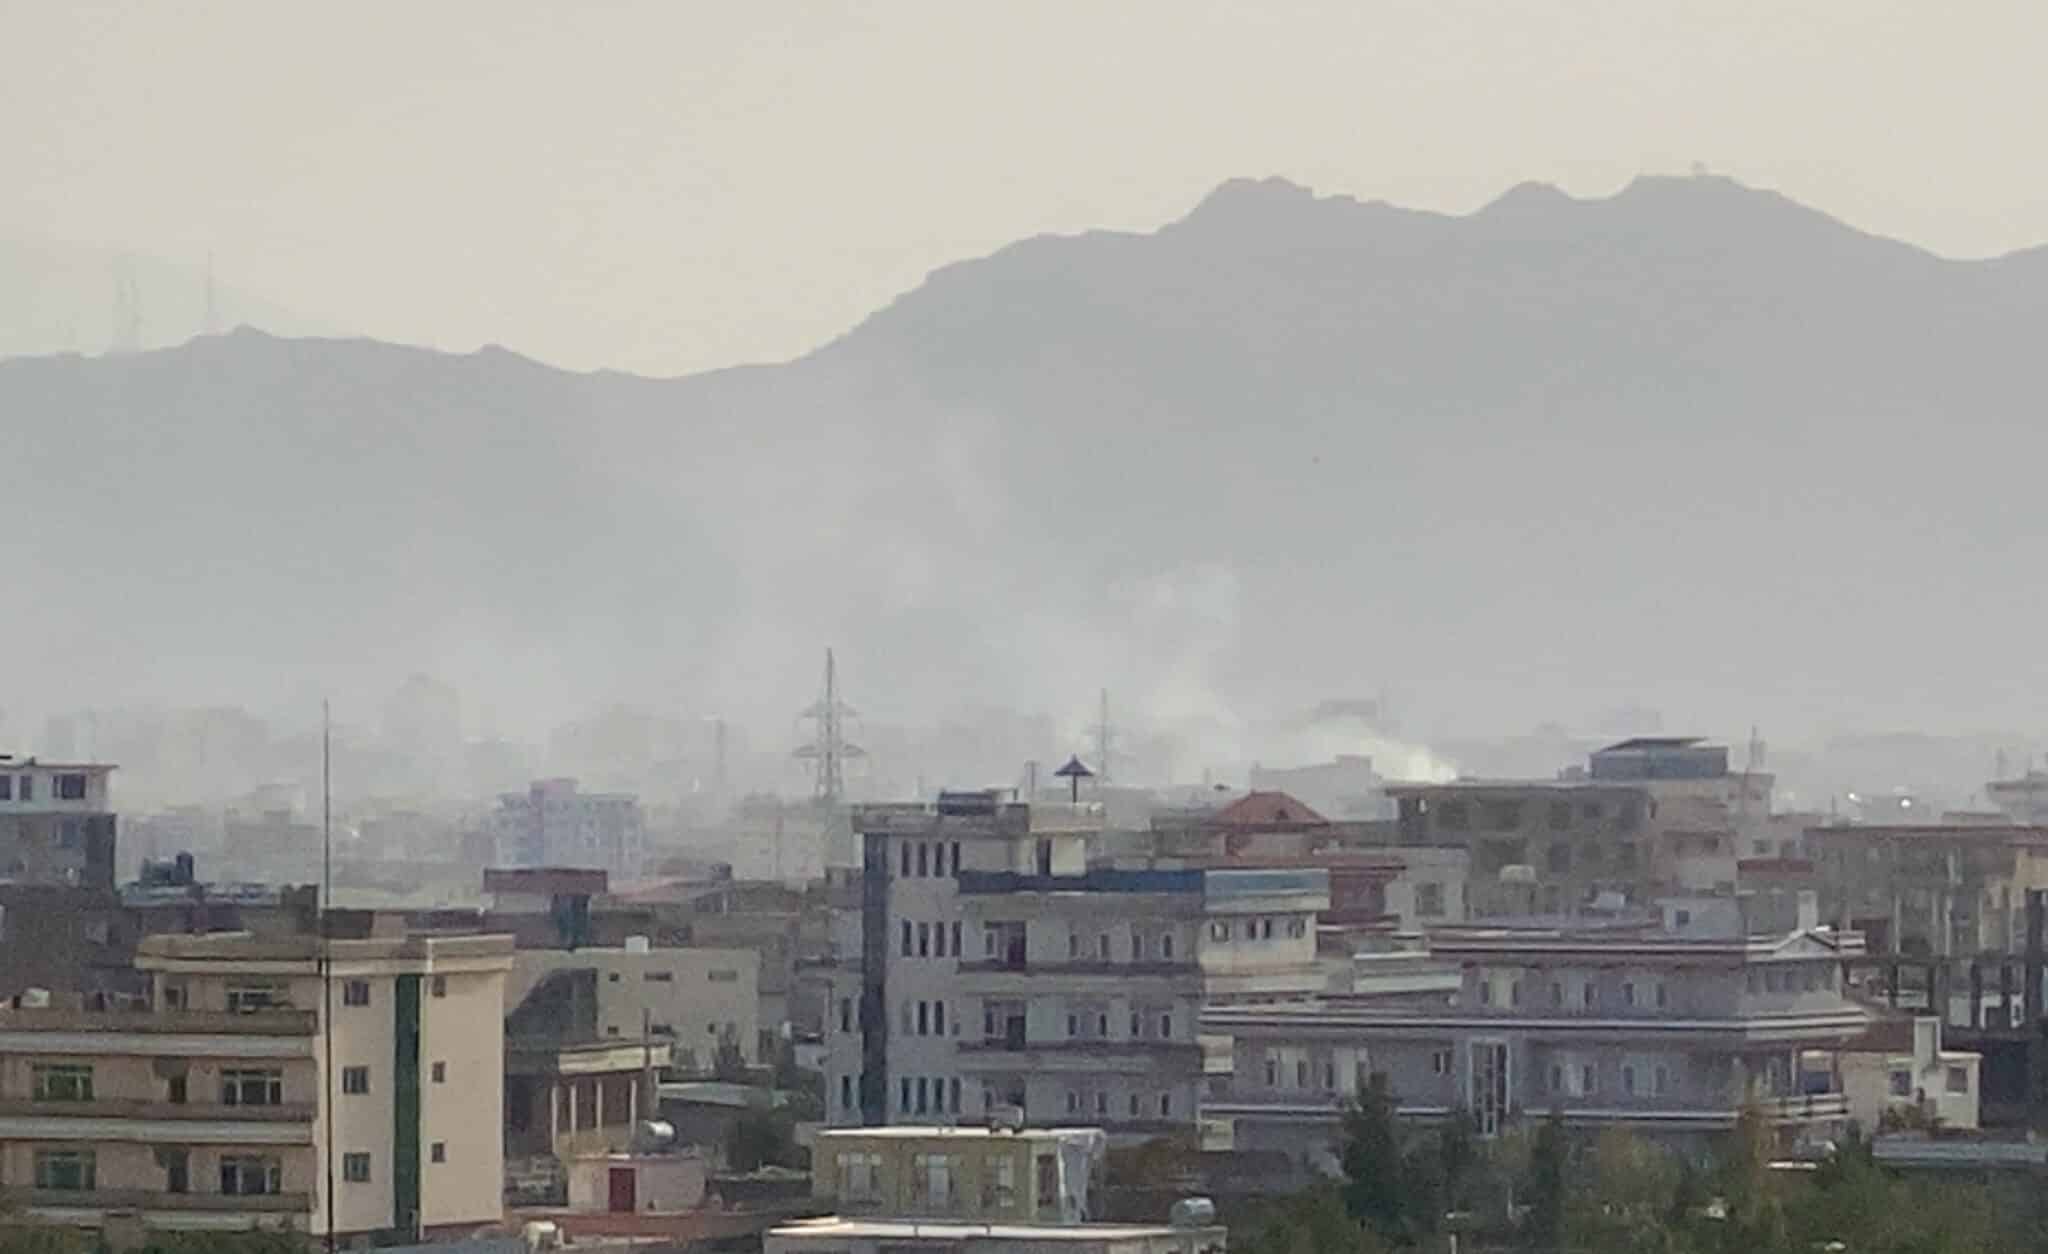 EEUU lanza un ataque para neutralizar una amenaza "inminente" en el aeropuerto de Kabul